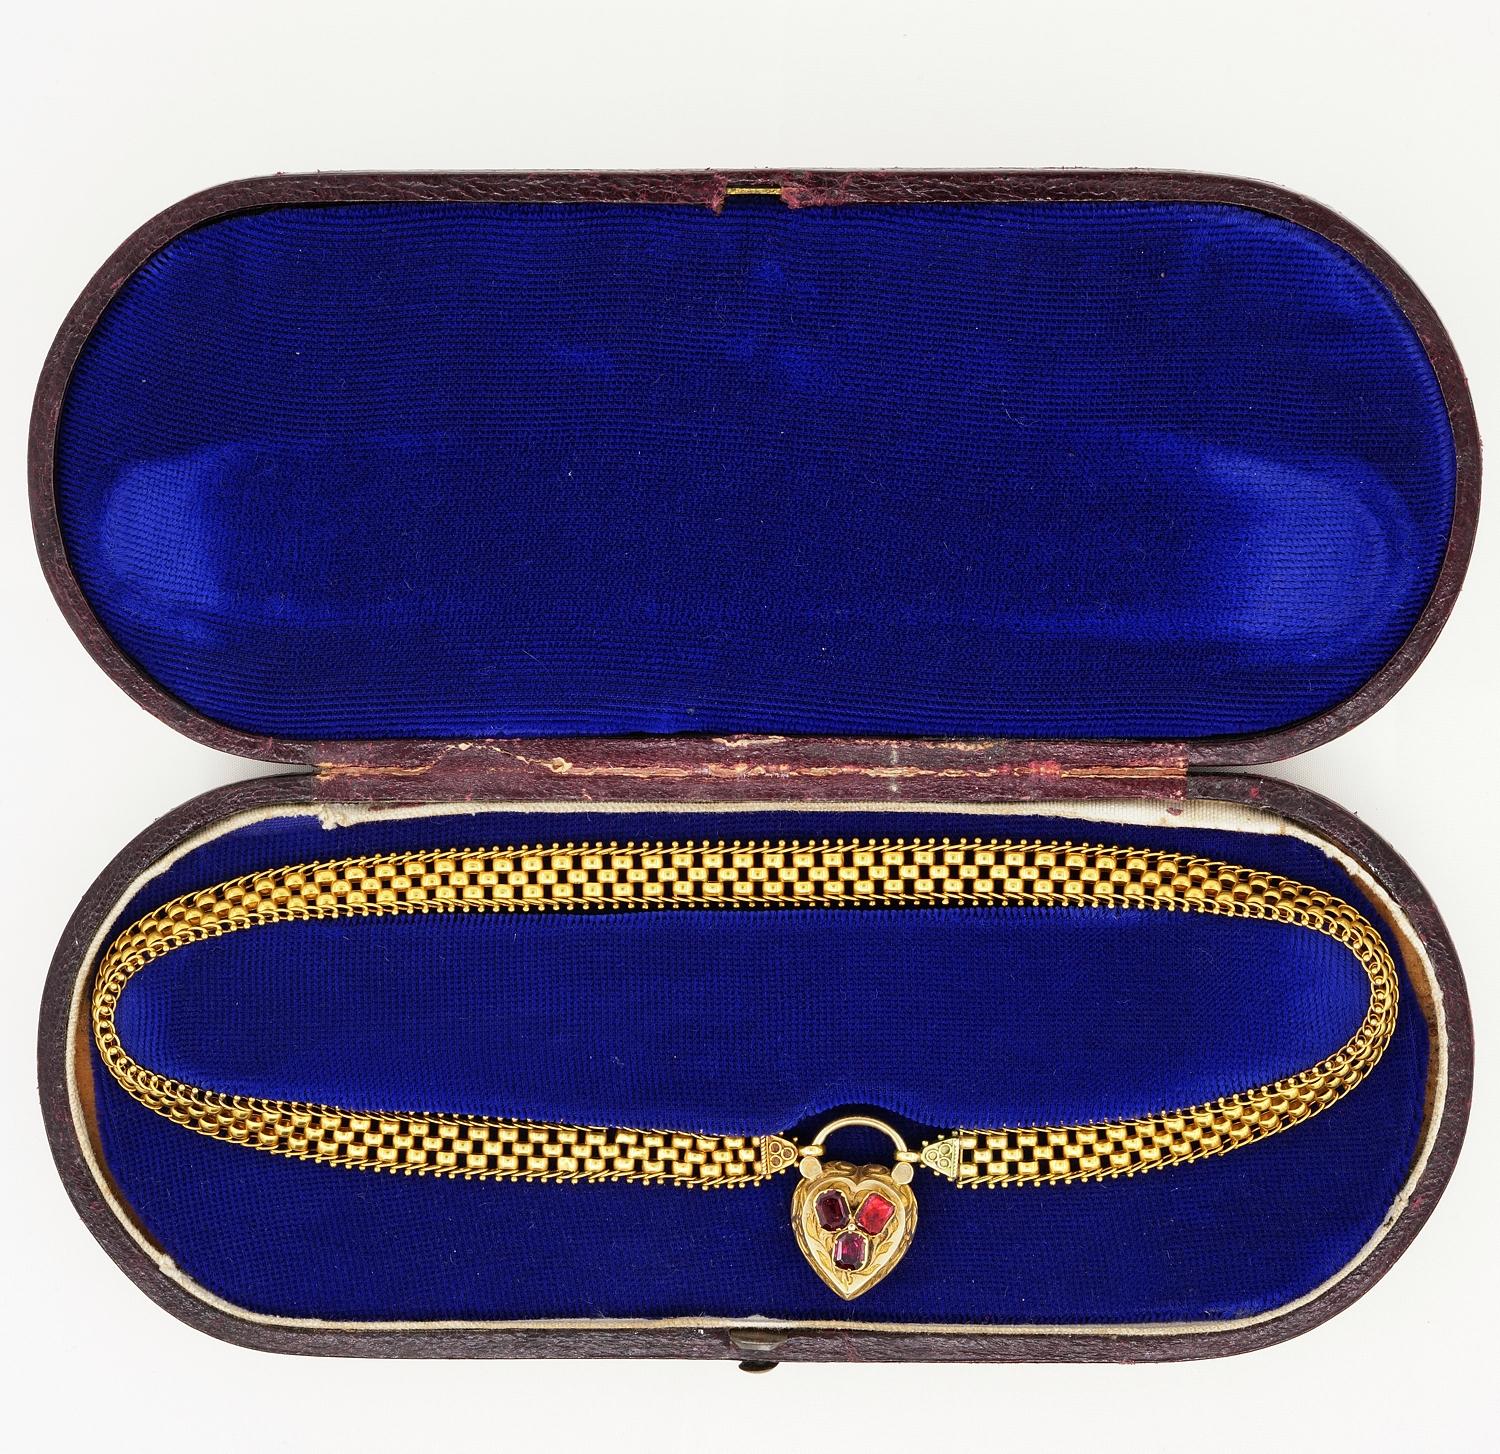 Ce joli collier date de l'époque victorienne, 1870/80 env.
Magnifique exécution de l'époque en or massif 18 carats, d'origine anglaise.
Signe qu'elle a été longtemps conservée au fil des siècles
Il s'agit d'un collier en ruban d'or fin d'une qualité